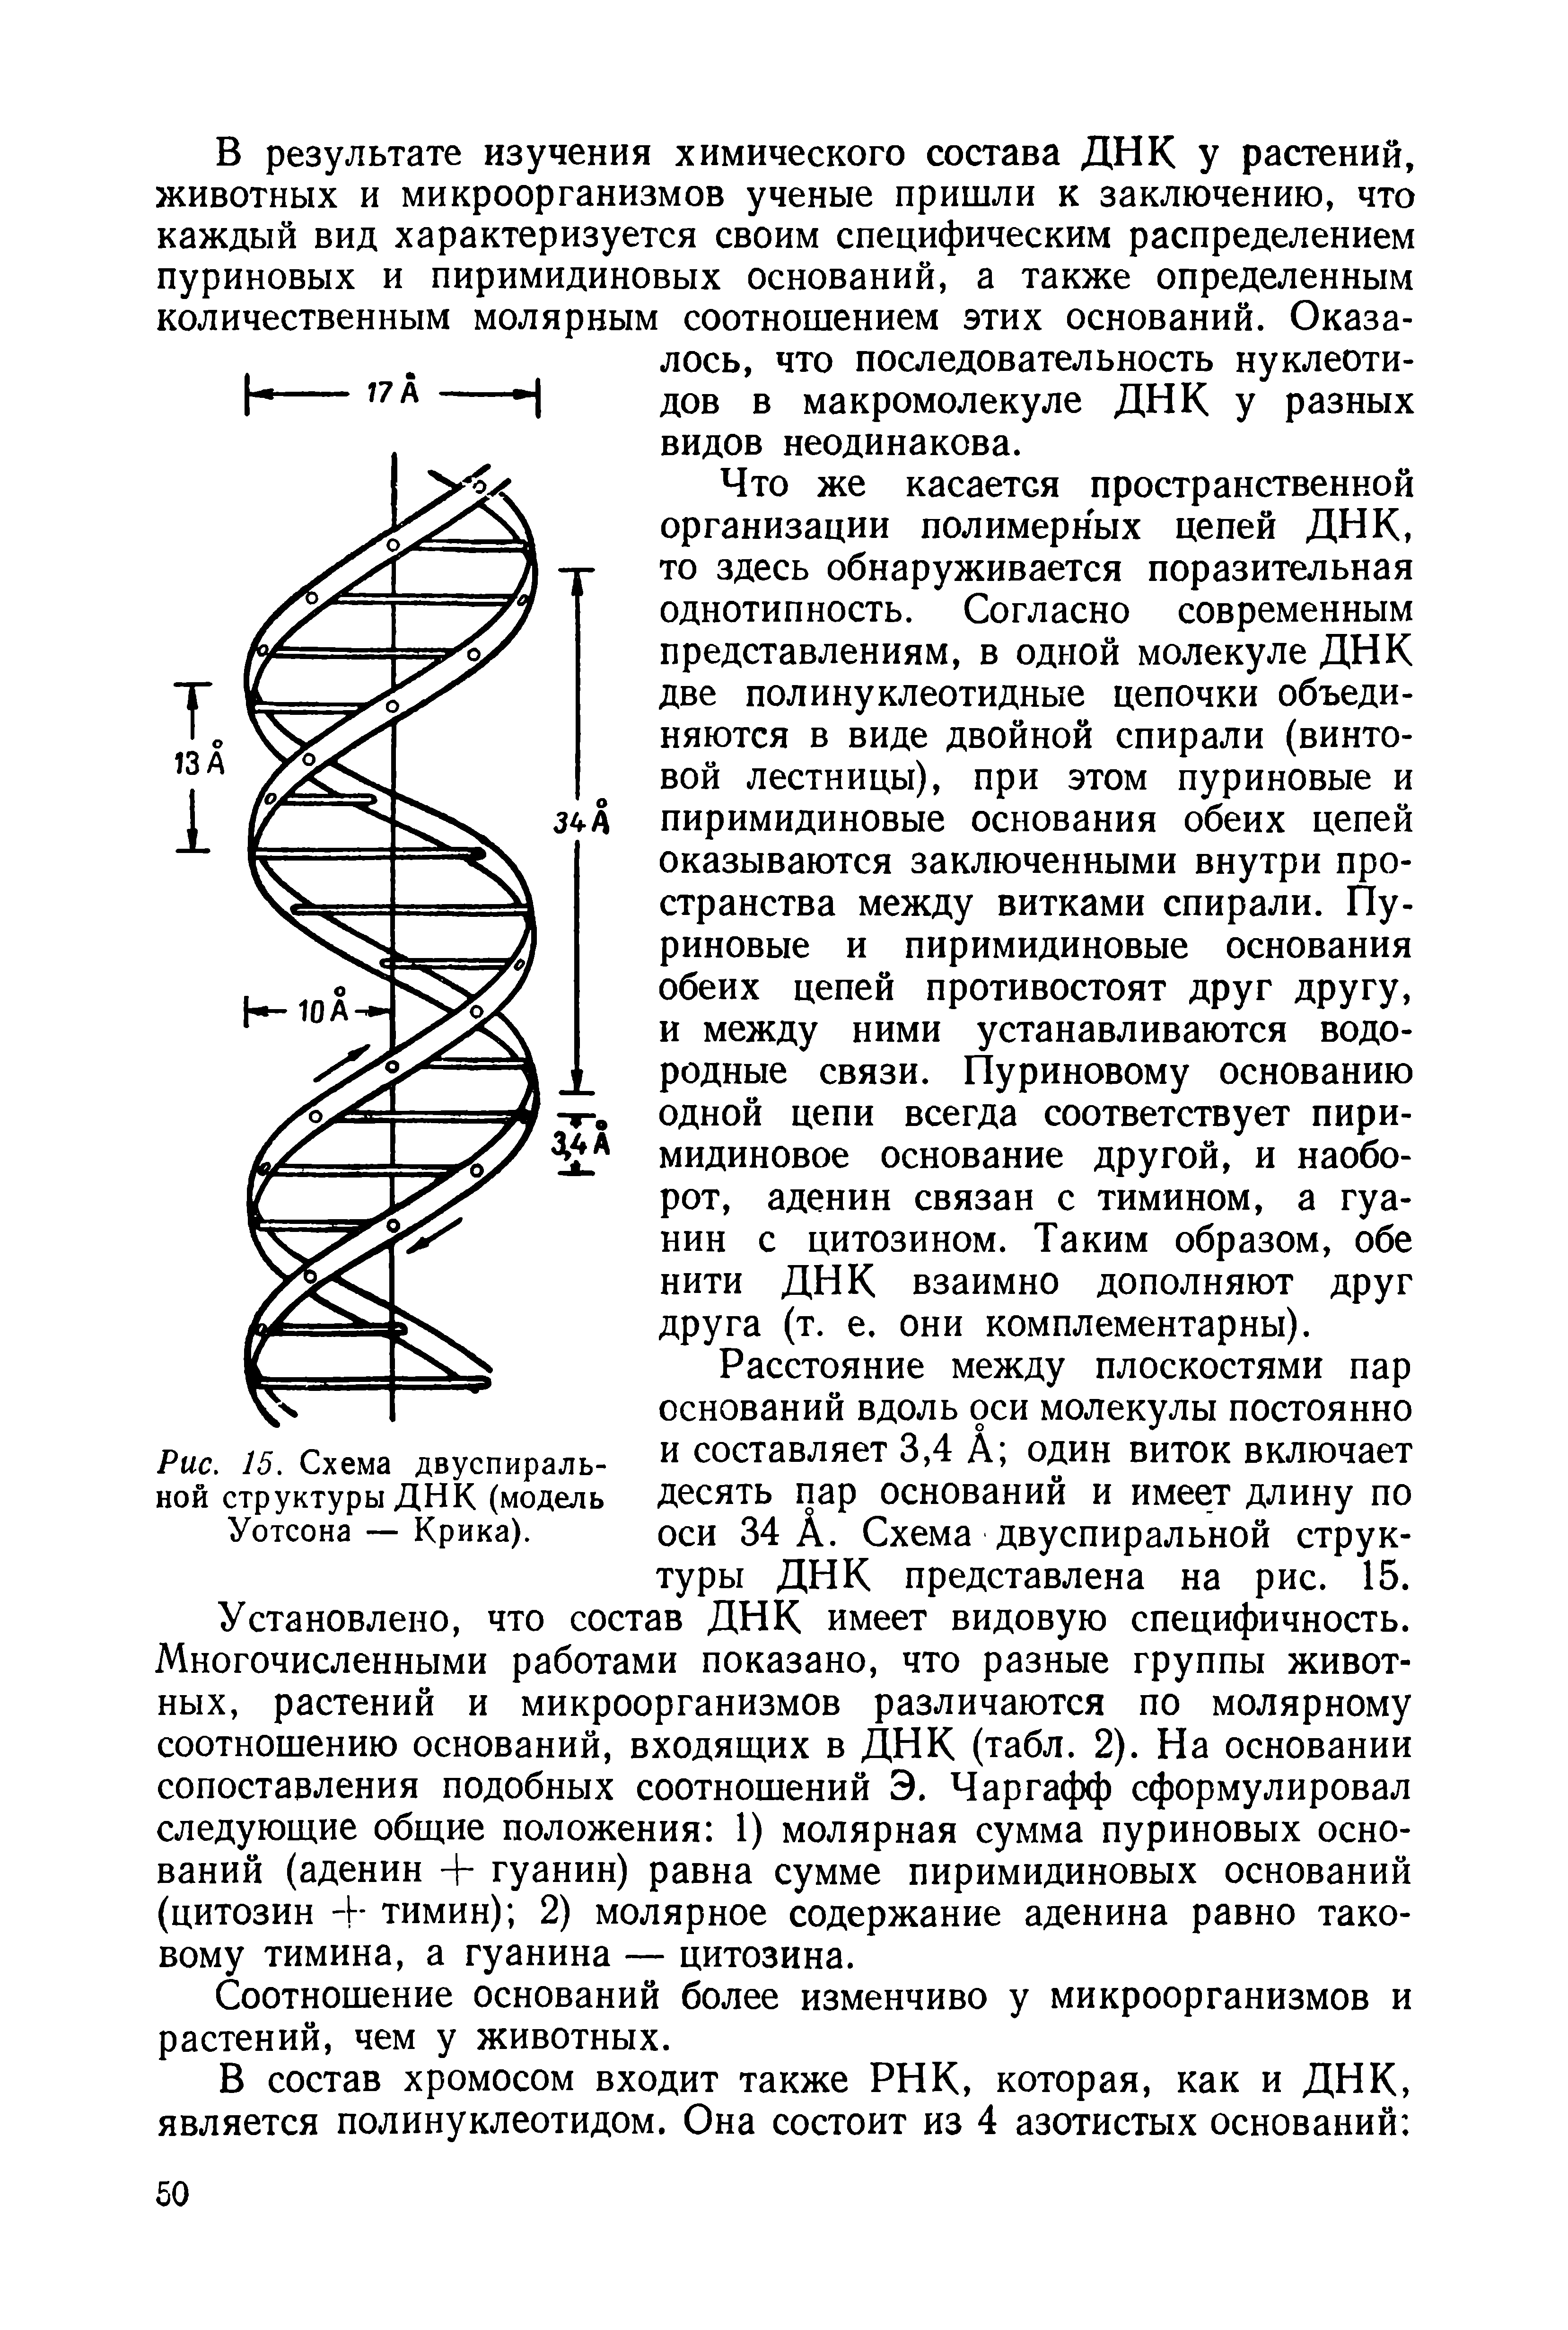 Рис. 15. Схема двуспиральной структуры ДНК (модель Уотсона — Крика).